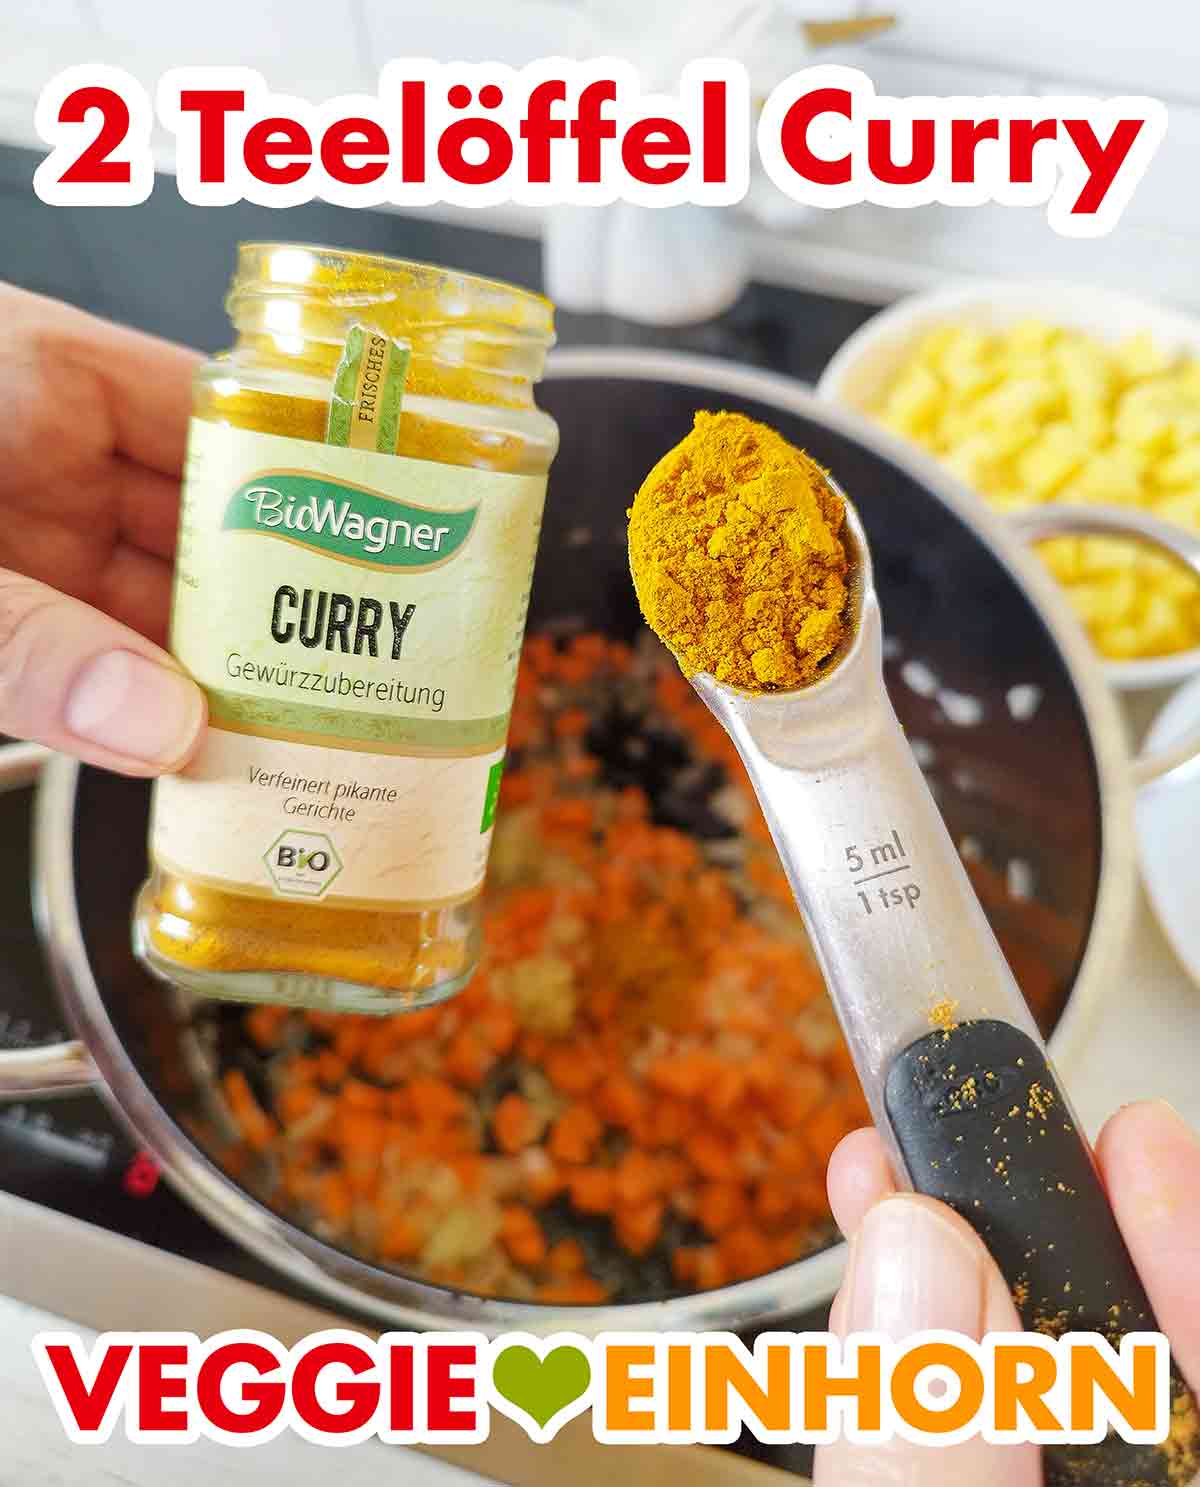 Currypulver für den Linsen Kartoffel Eintopf